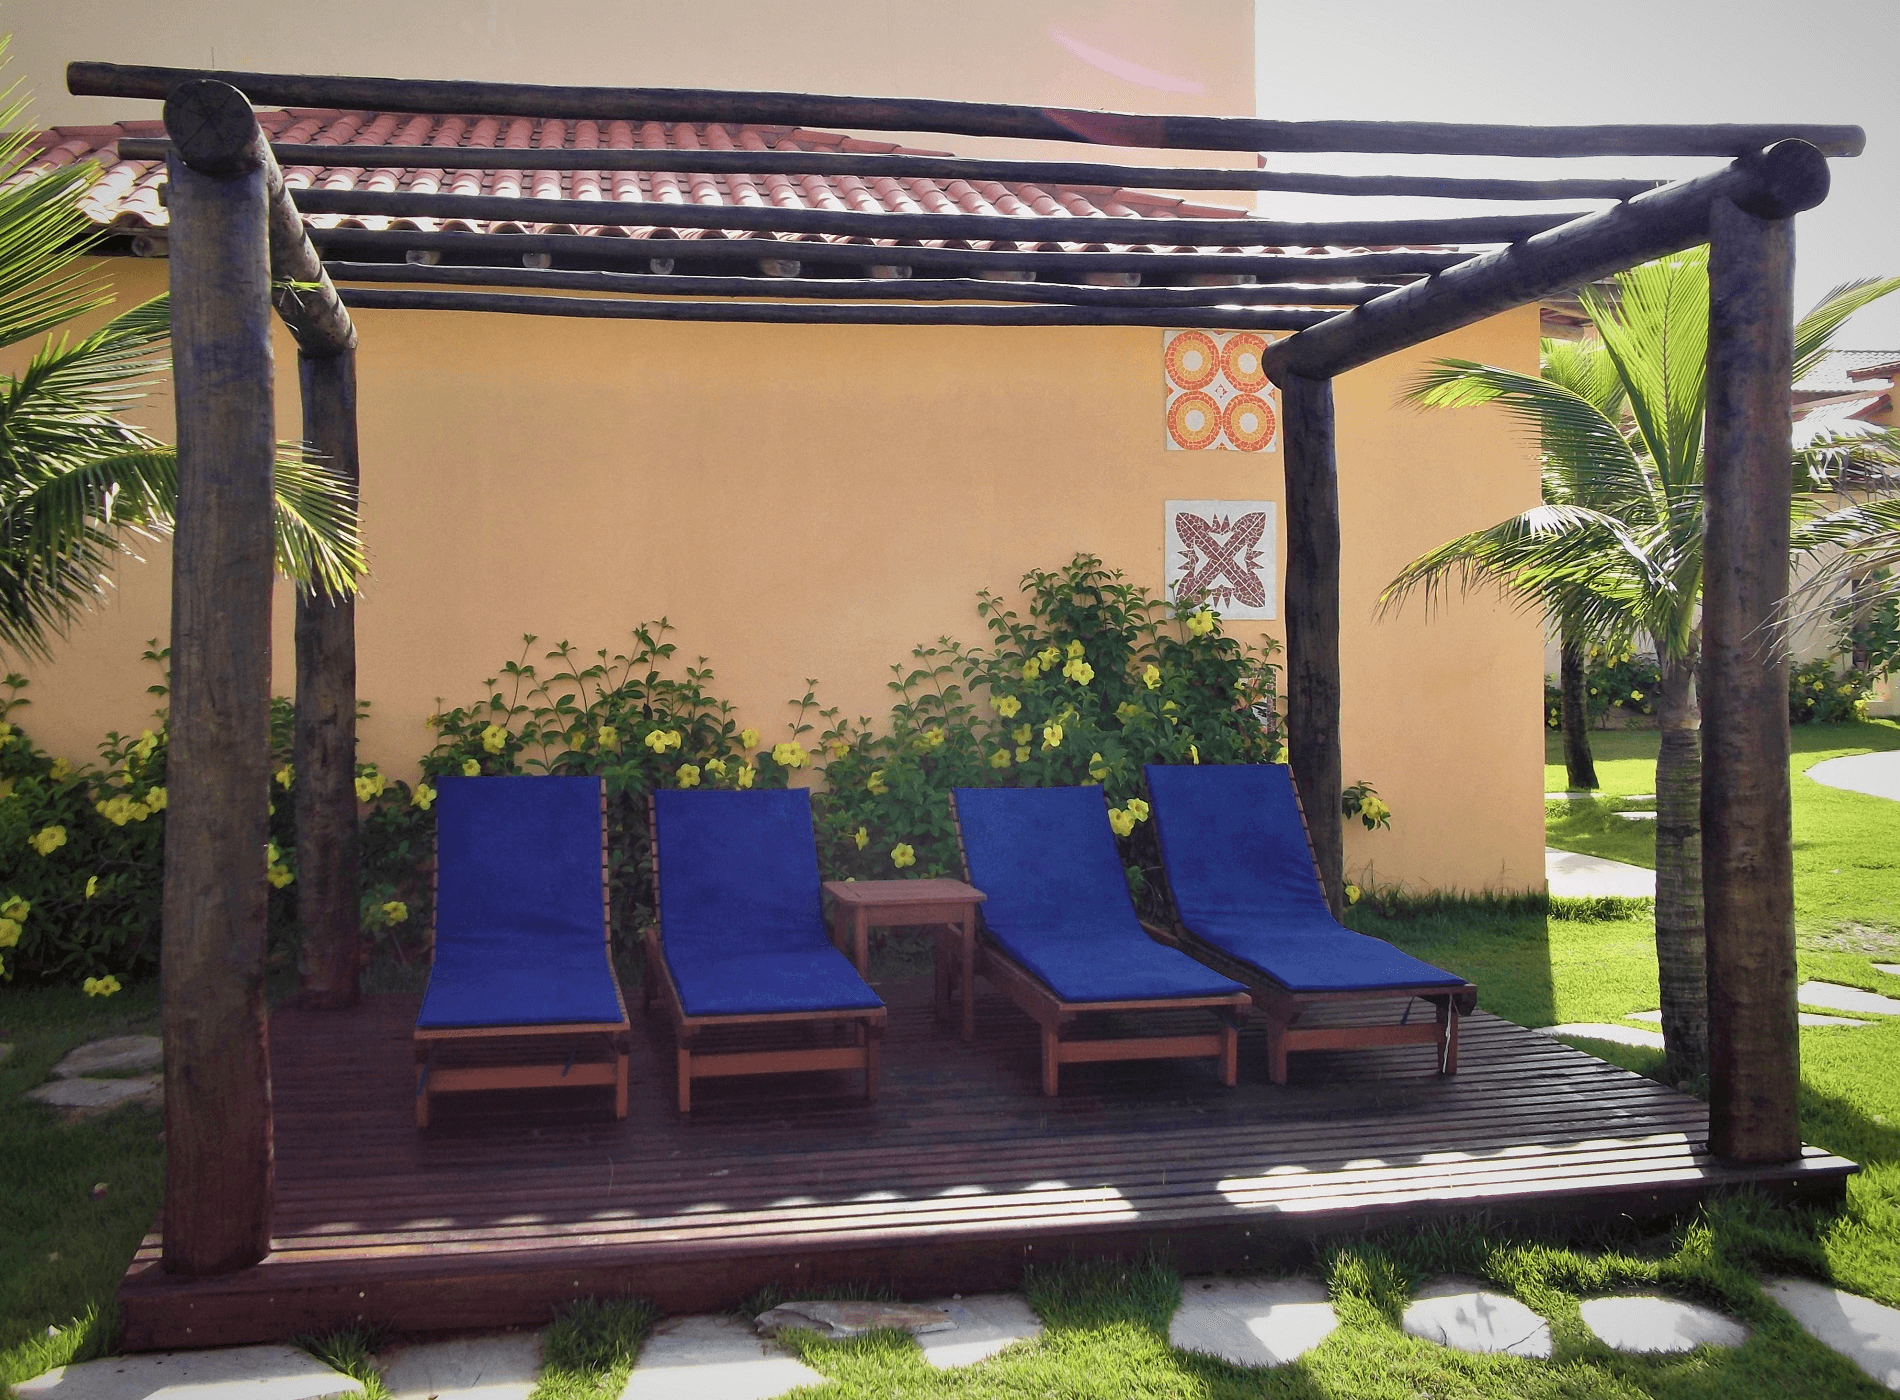 As cadeiras de praia instaladas no deck do pergolado criam o espaço perfeito para um banho de sol.